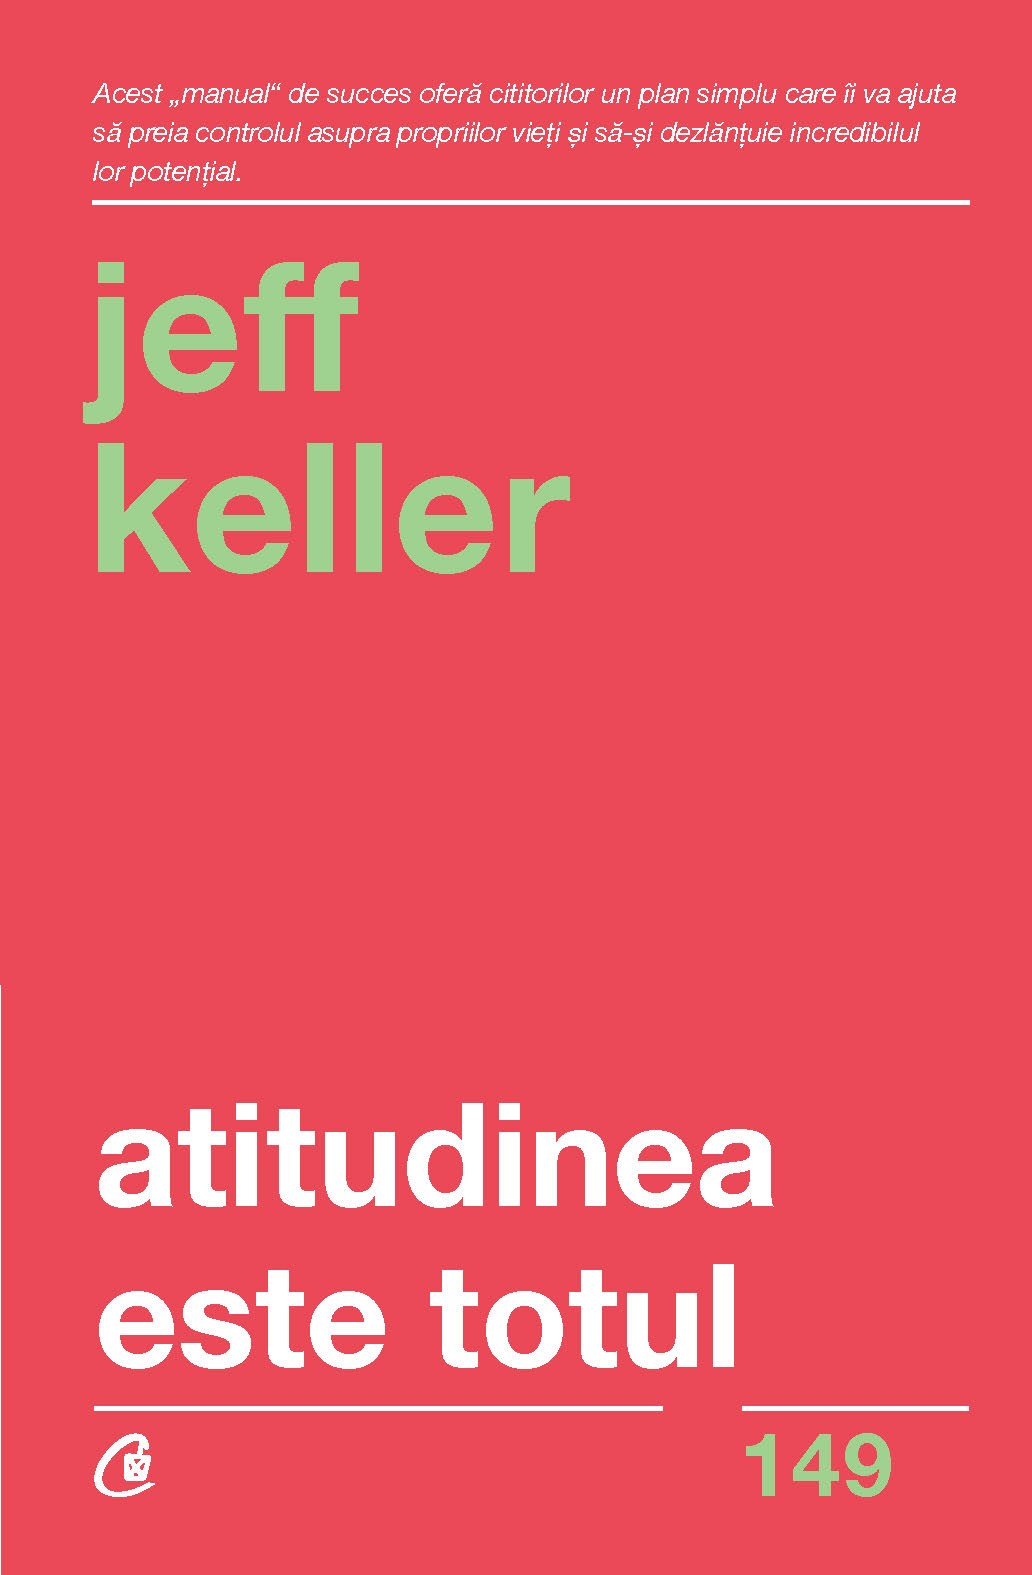 Atitudinea este totul | Jeff Keller carturesti.ro imagine 2022